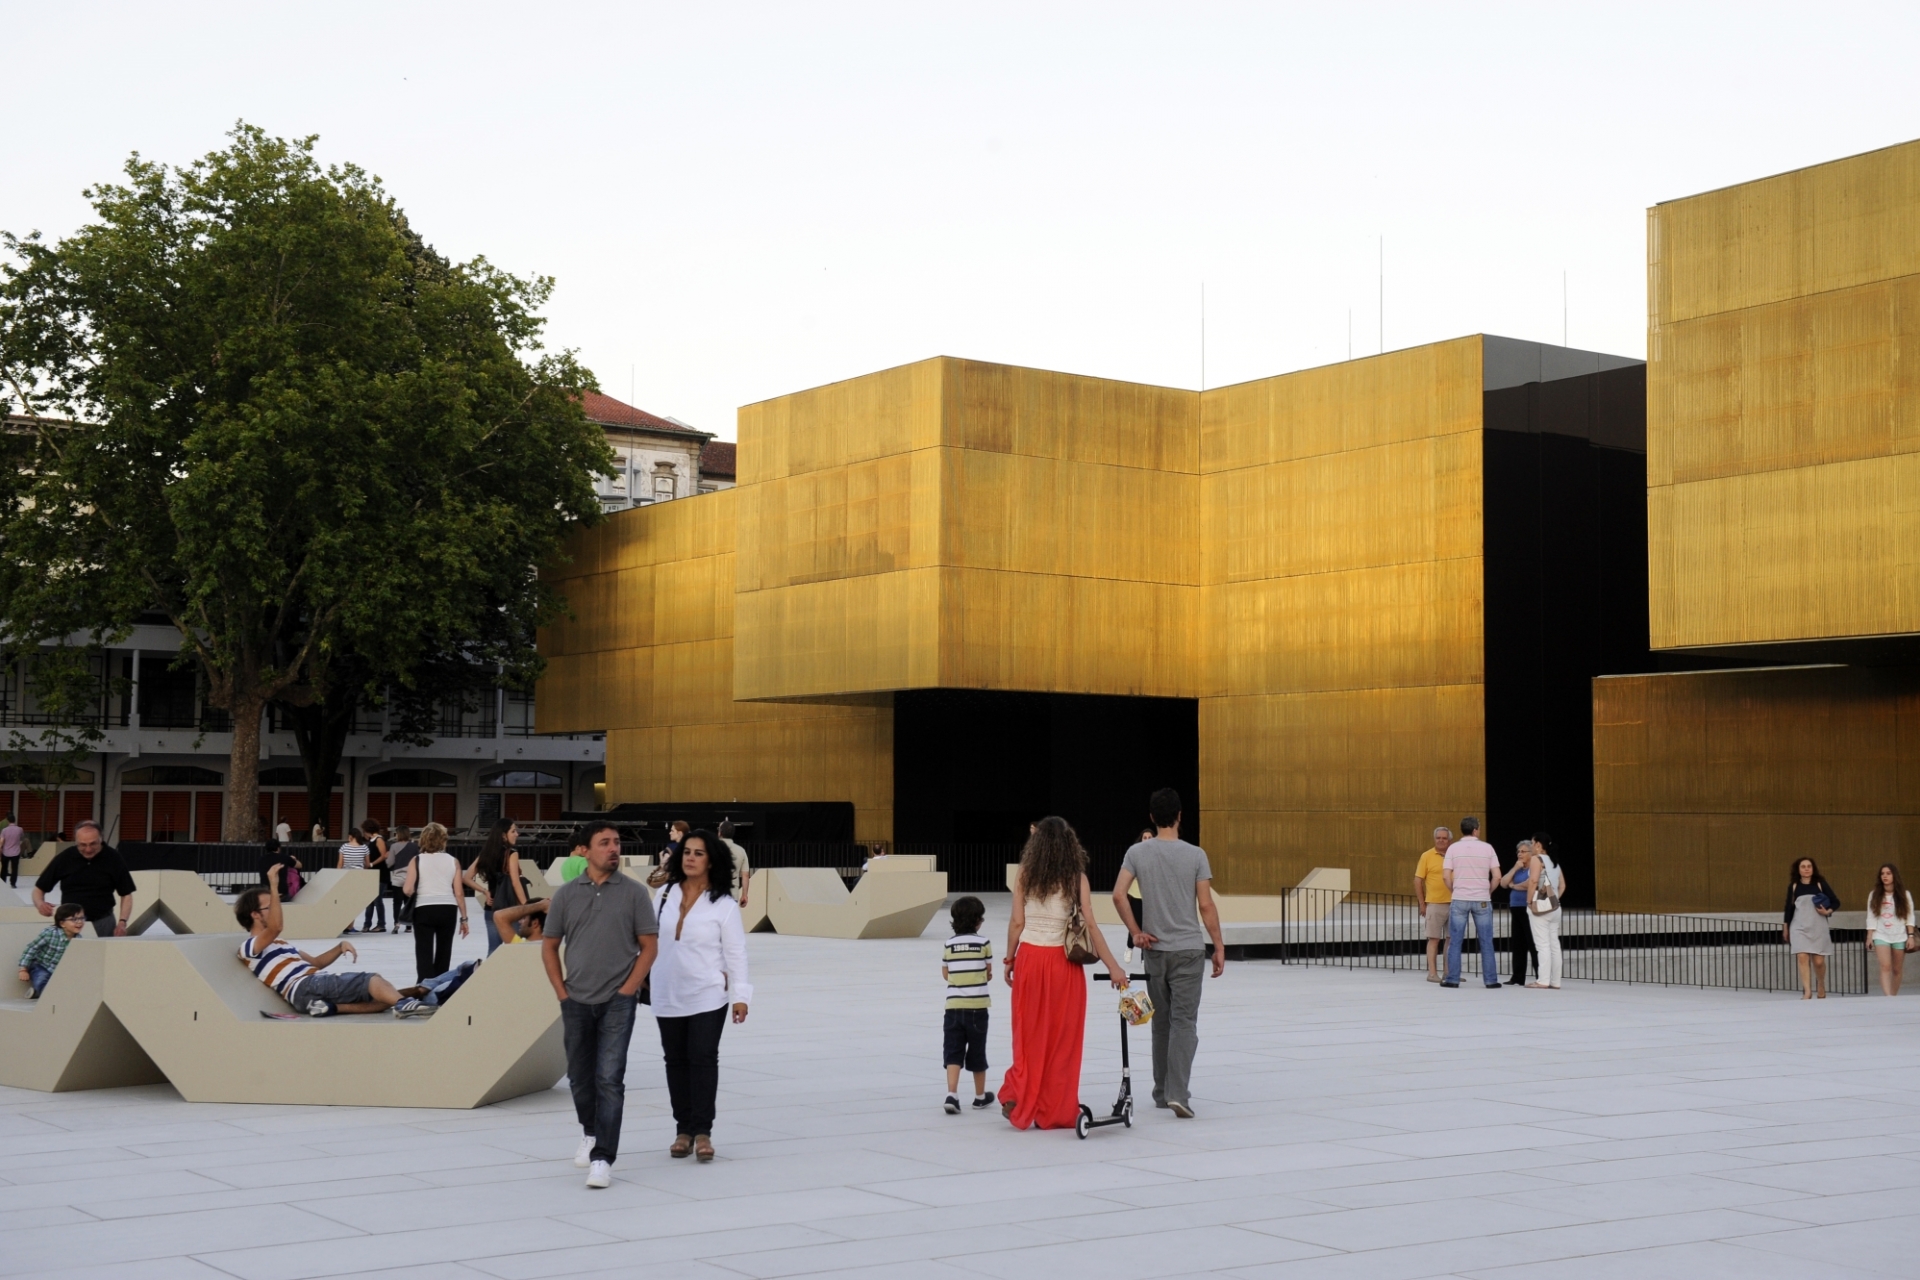 GuimaraesCool_Blog_Outono traz novidades ao Centro Internacional das Artes José de Guimarães